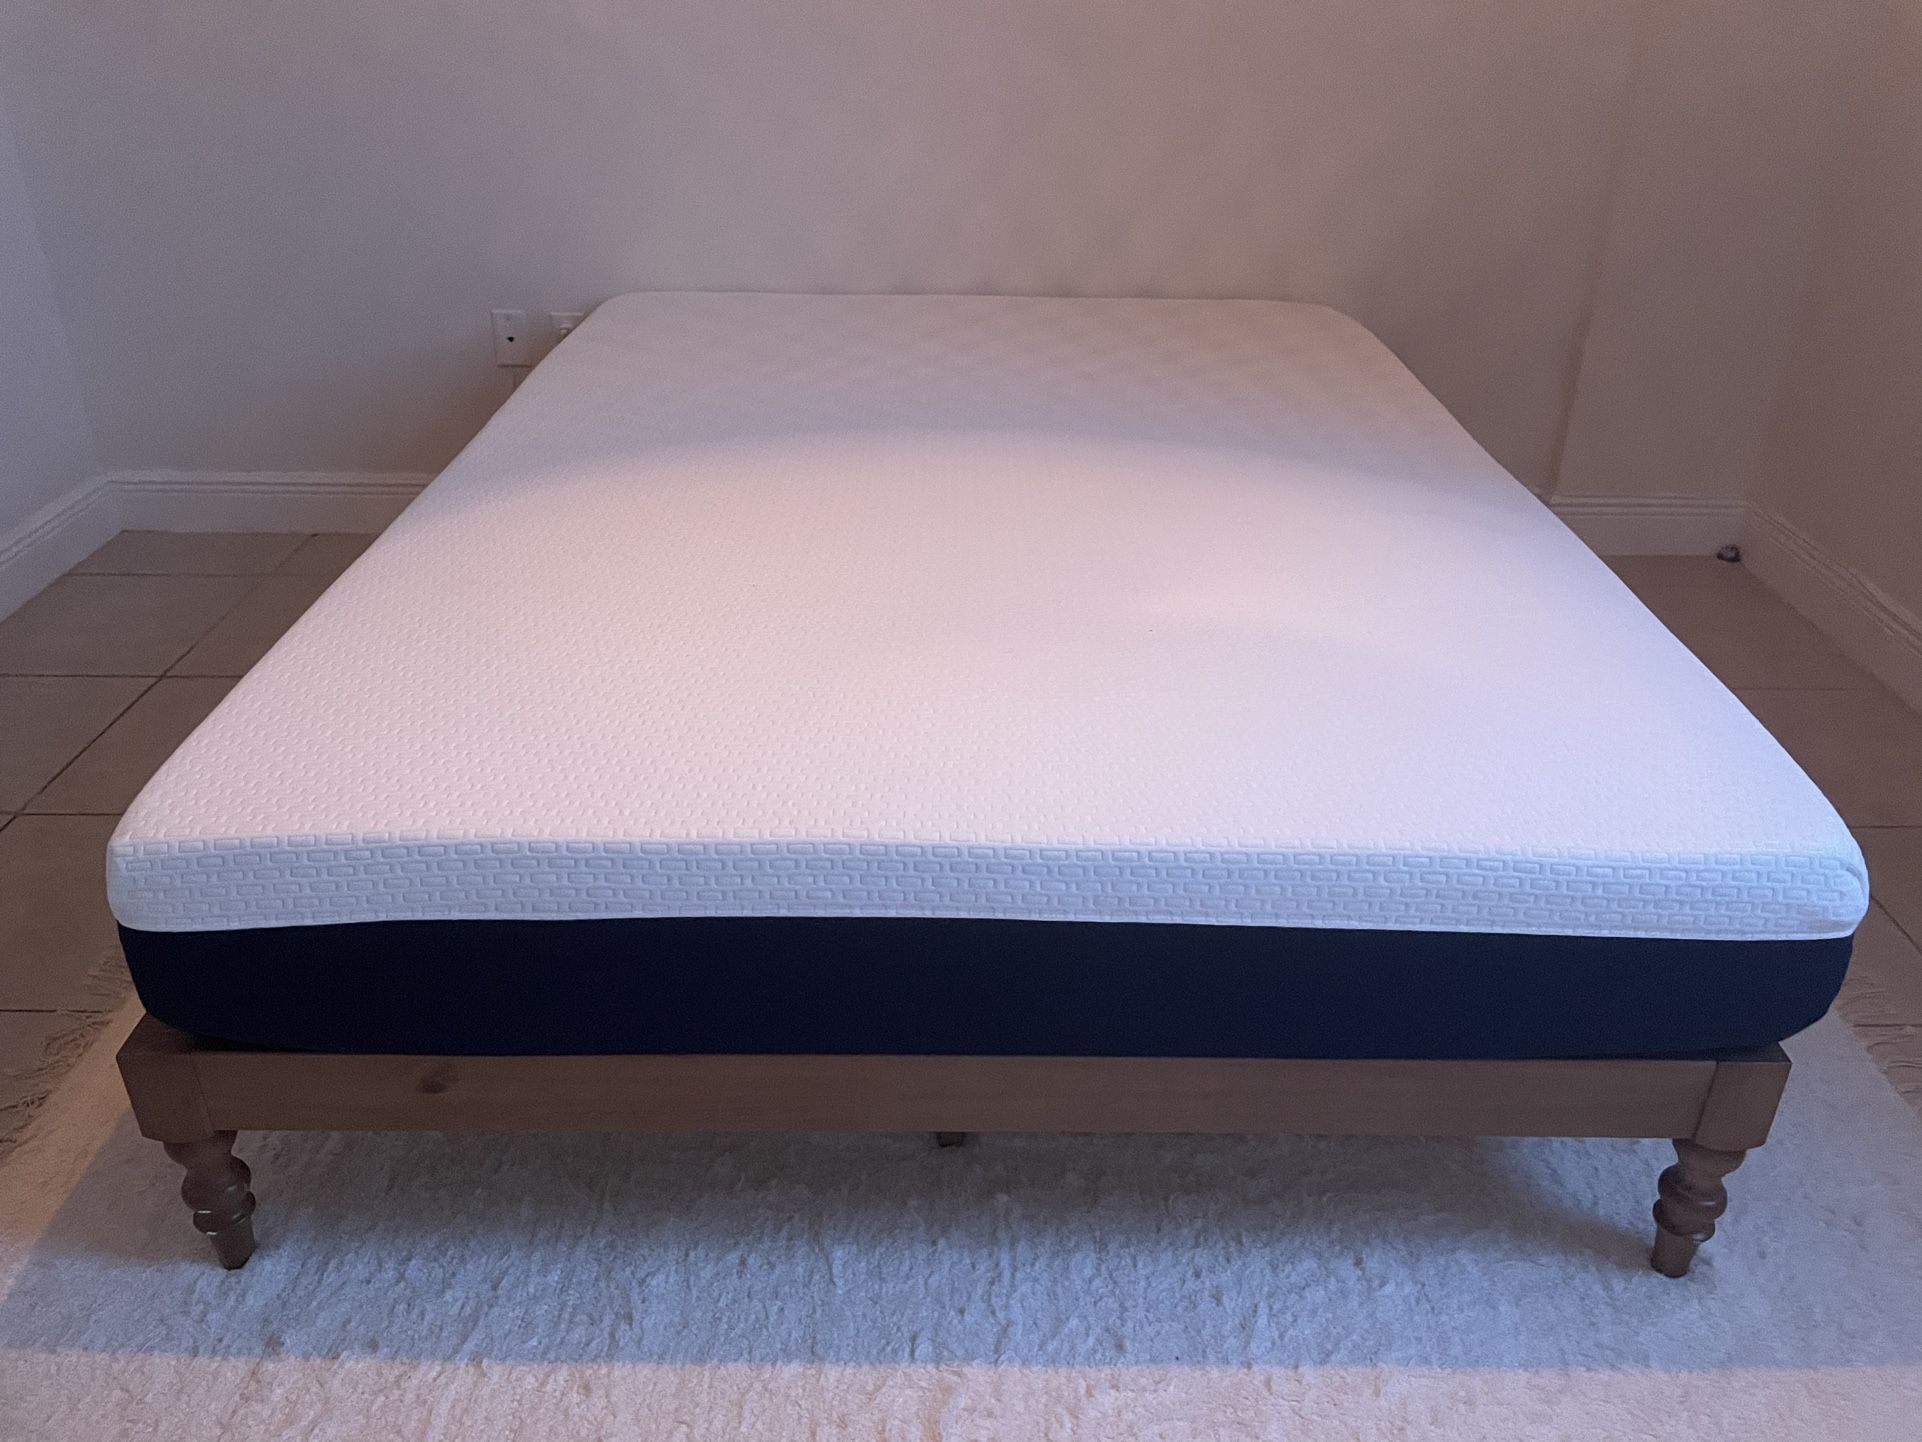 olee foam mattress reviews